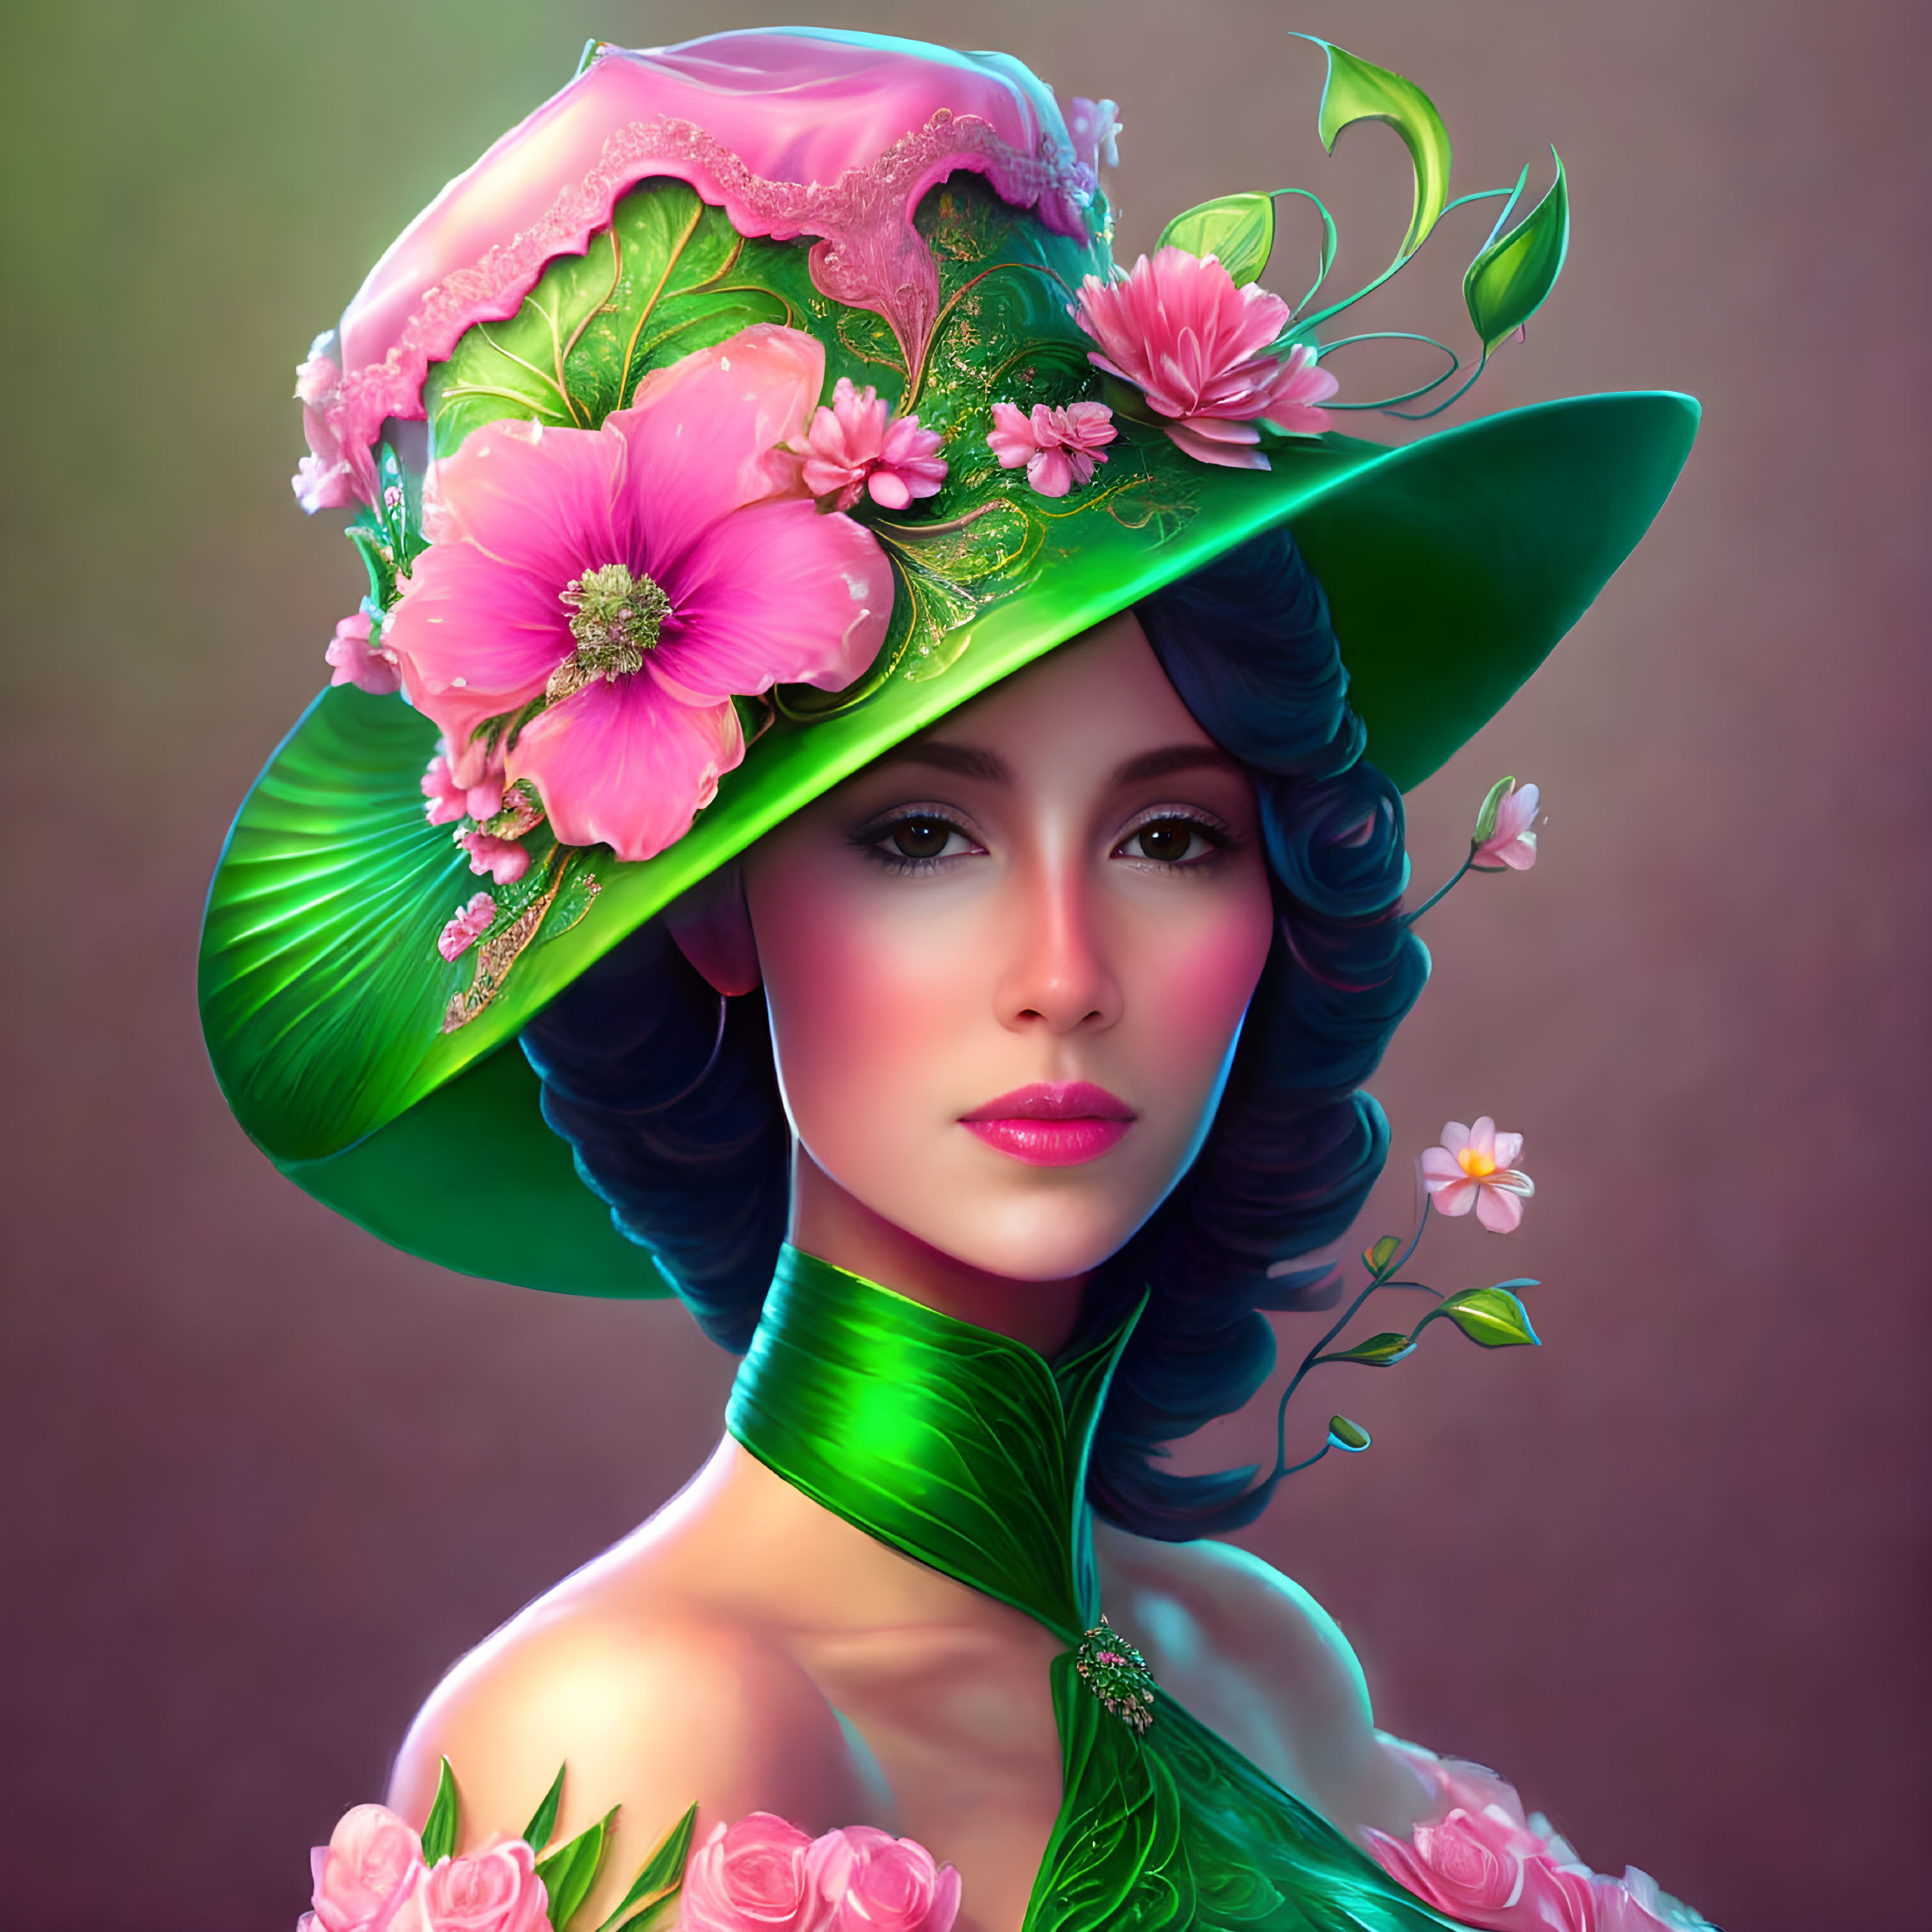   A beautiful lady in a green fancy hat